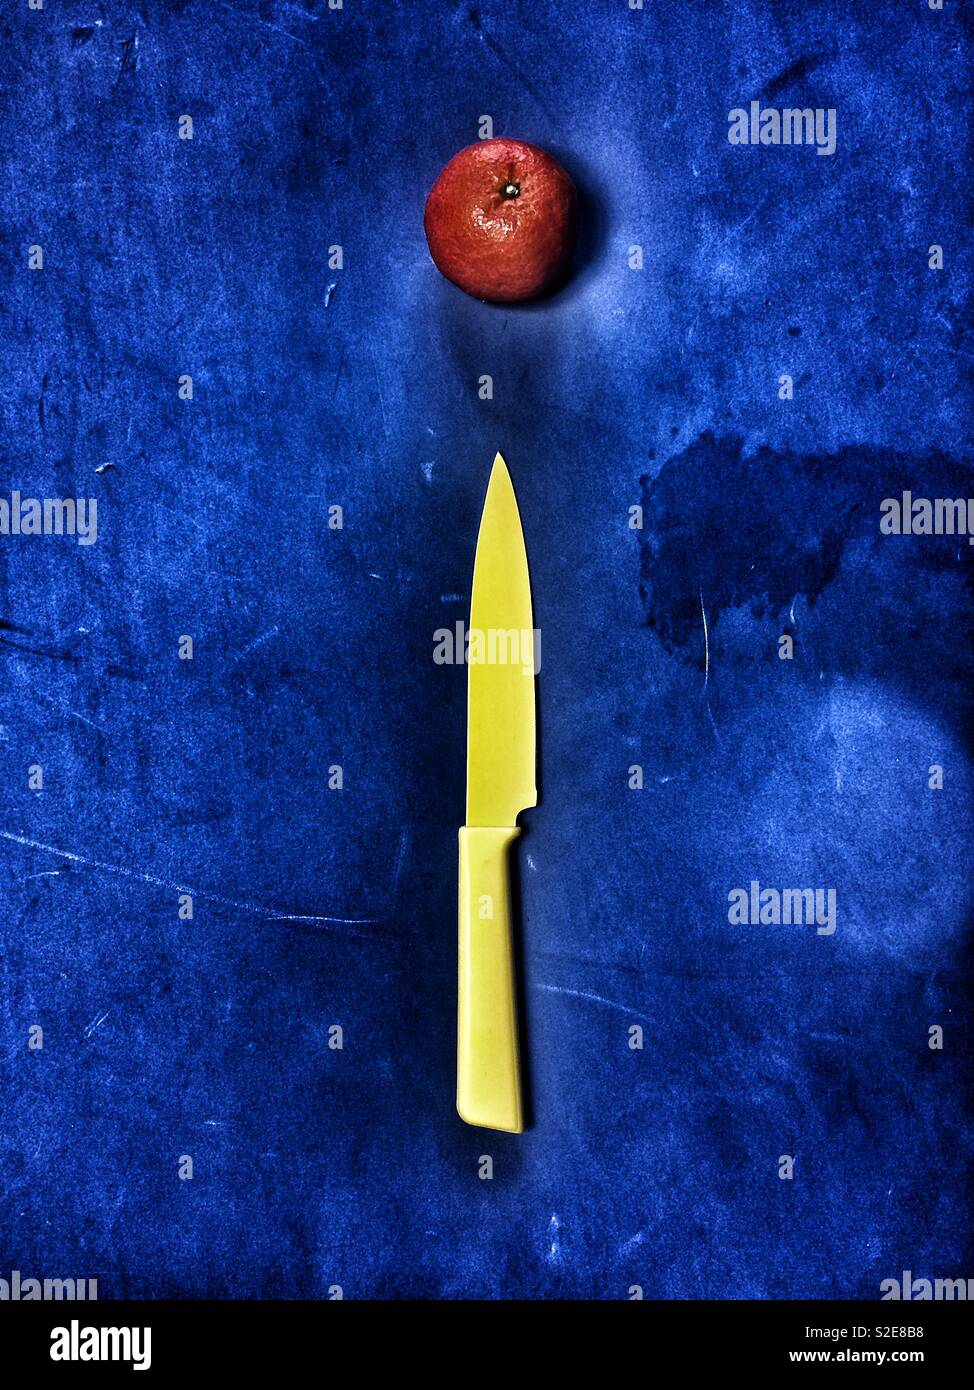 Le couteau et la mandarine jaune sur fond bleu Banque D'Images